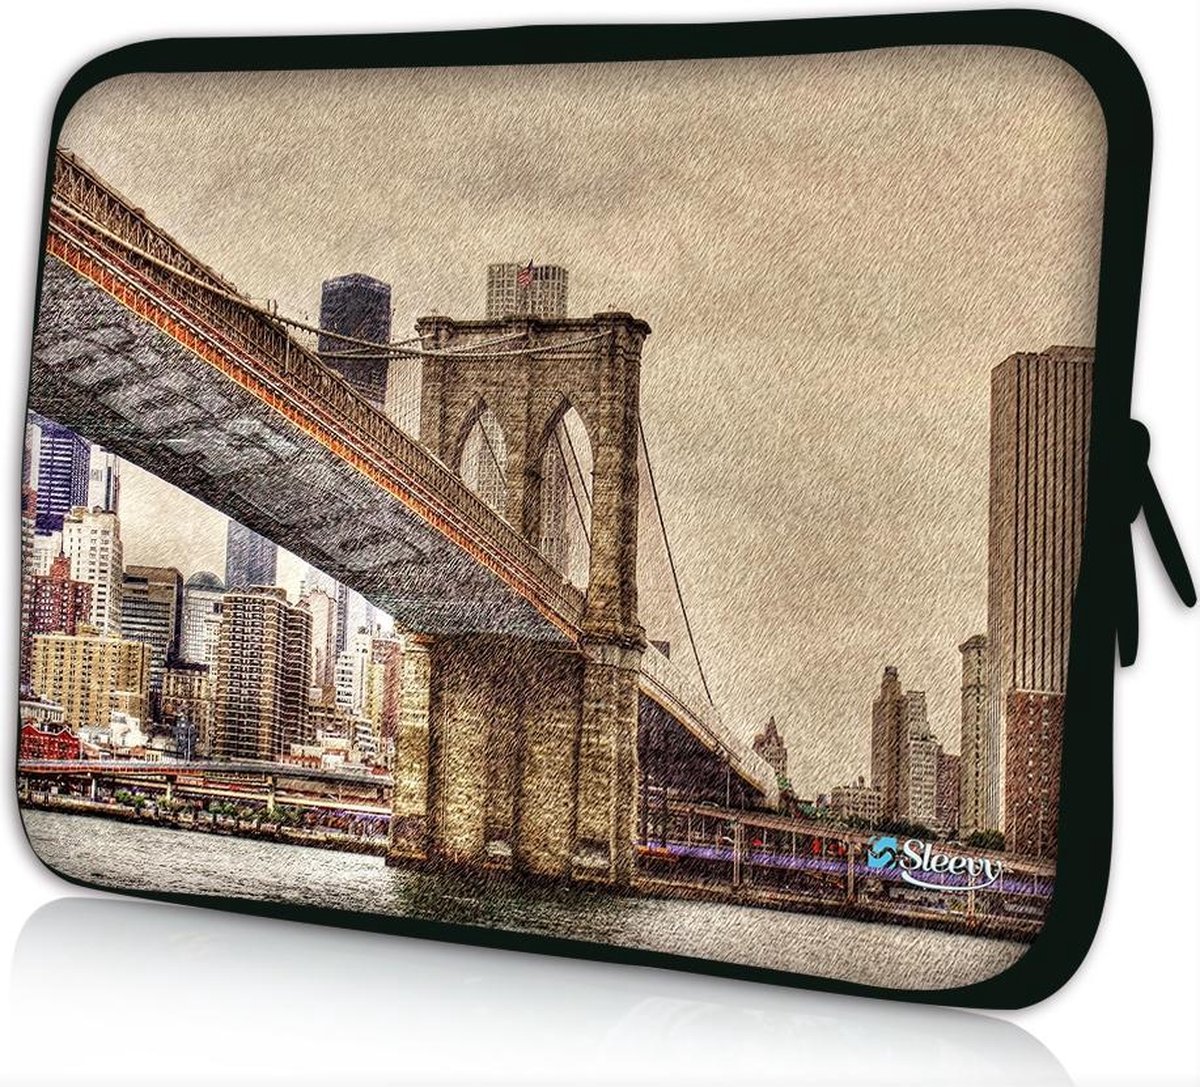 Sleevy 17,3 laptophoes Brooklyn Bridge uit New York - laptop sleeve - Sleevy collectie 300+ designs